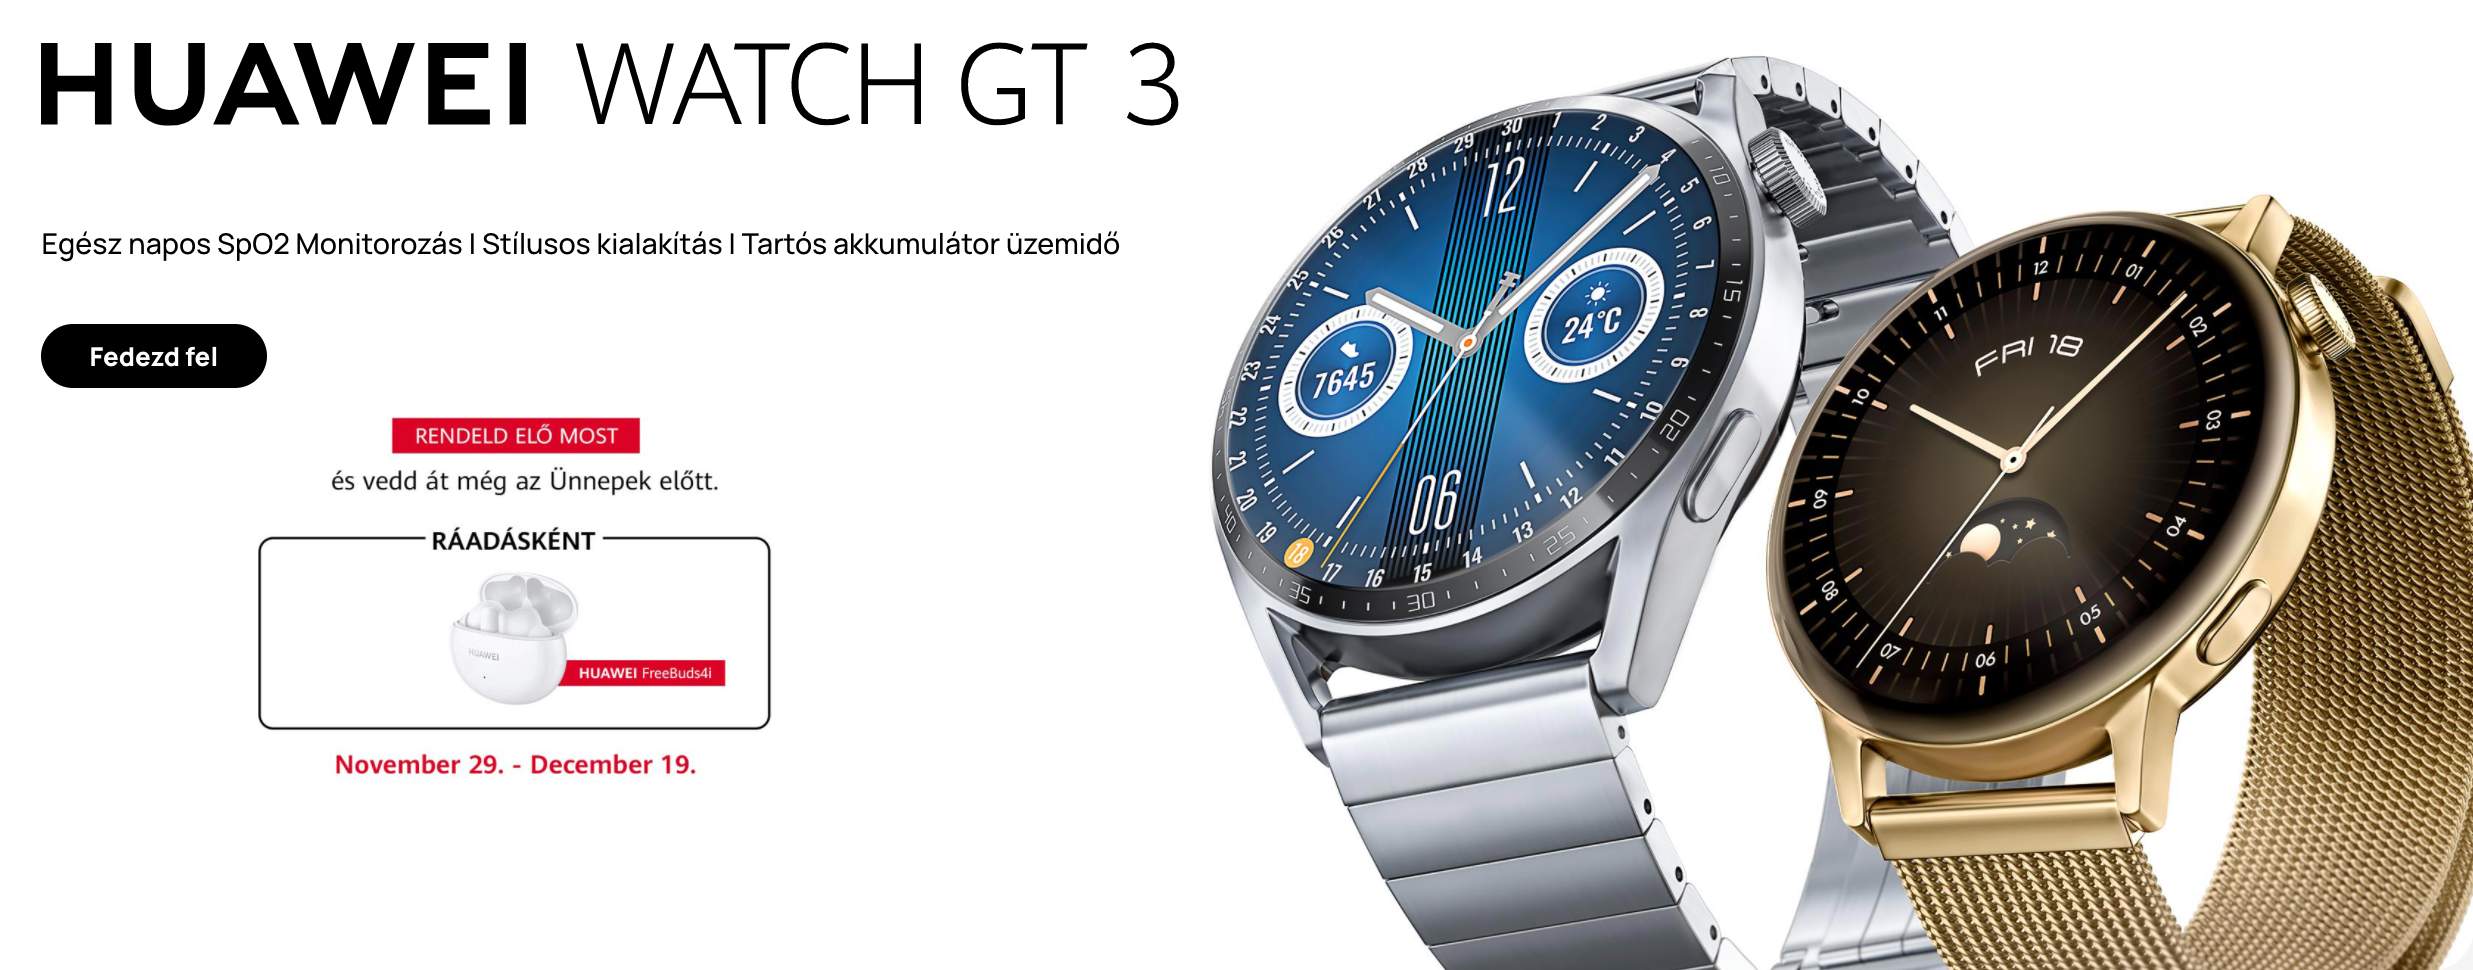 Huawei Watch GT 3 széria árak és előrendelői ajándék